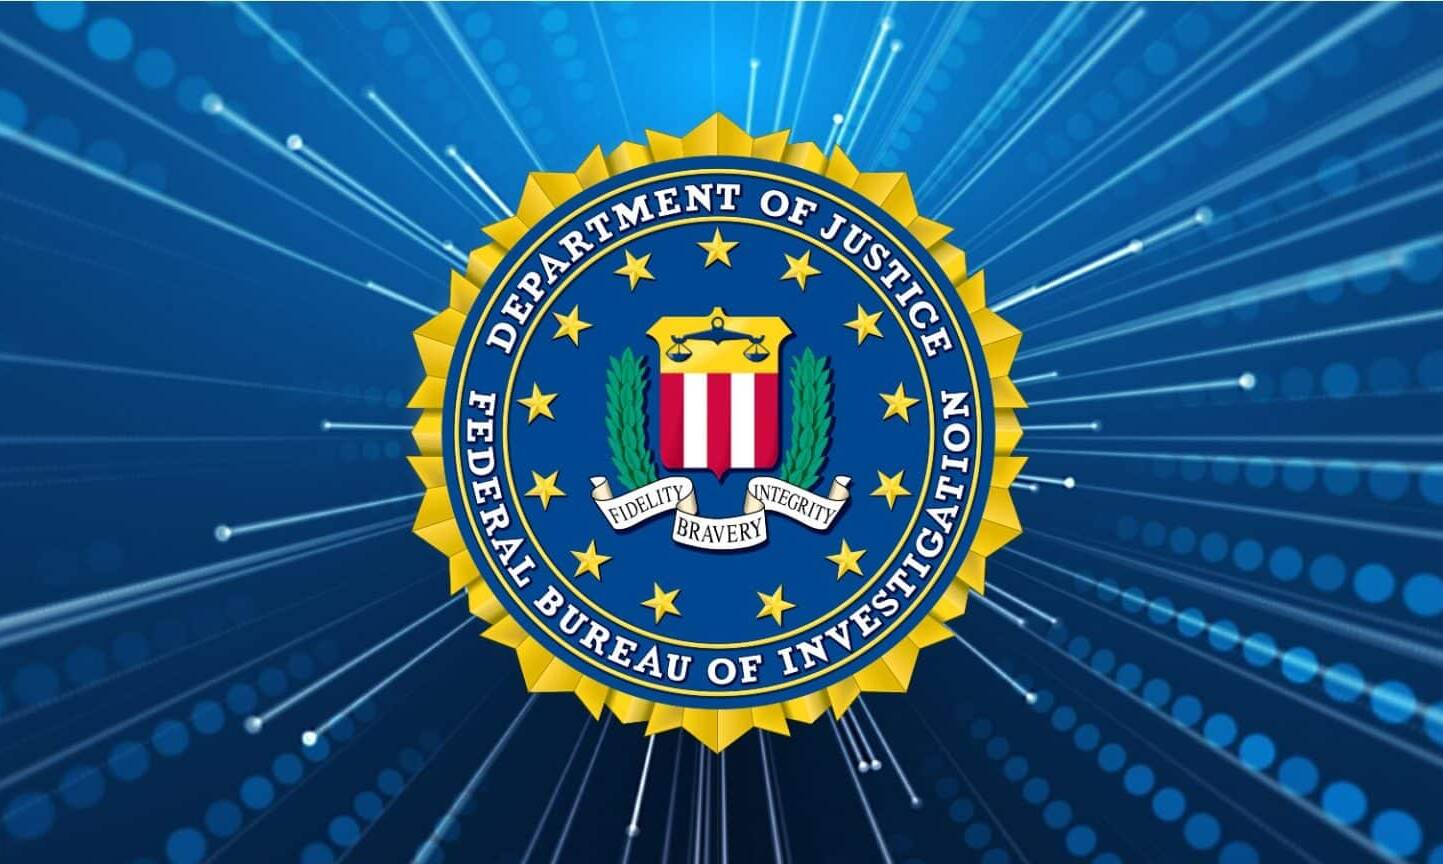 Logo dell'FBI